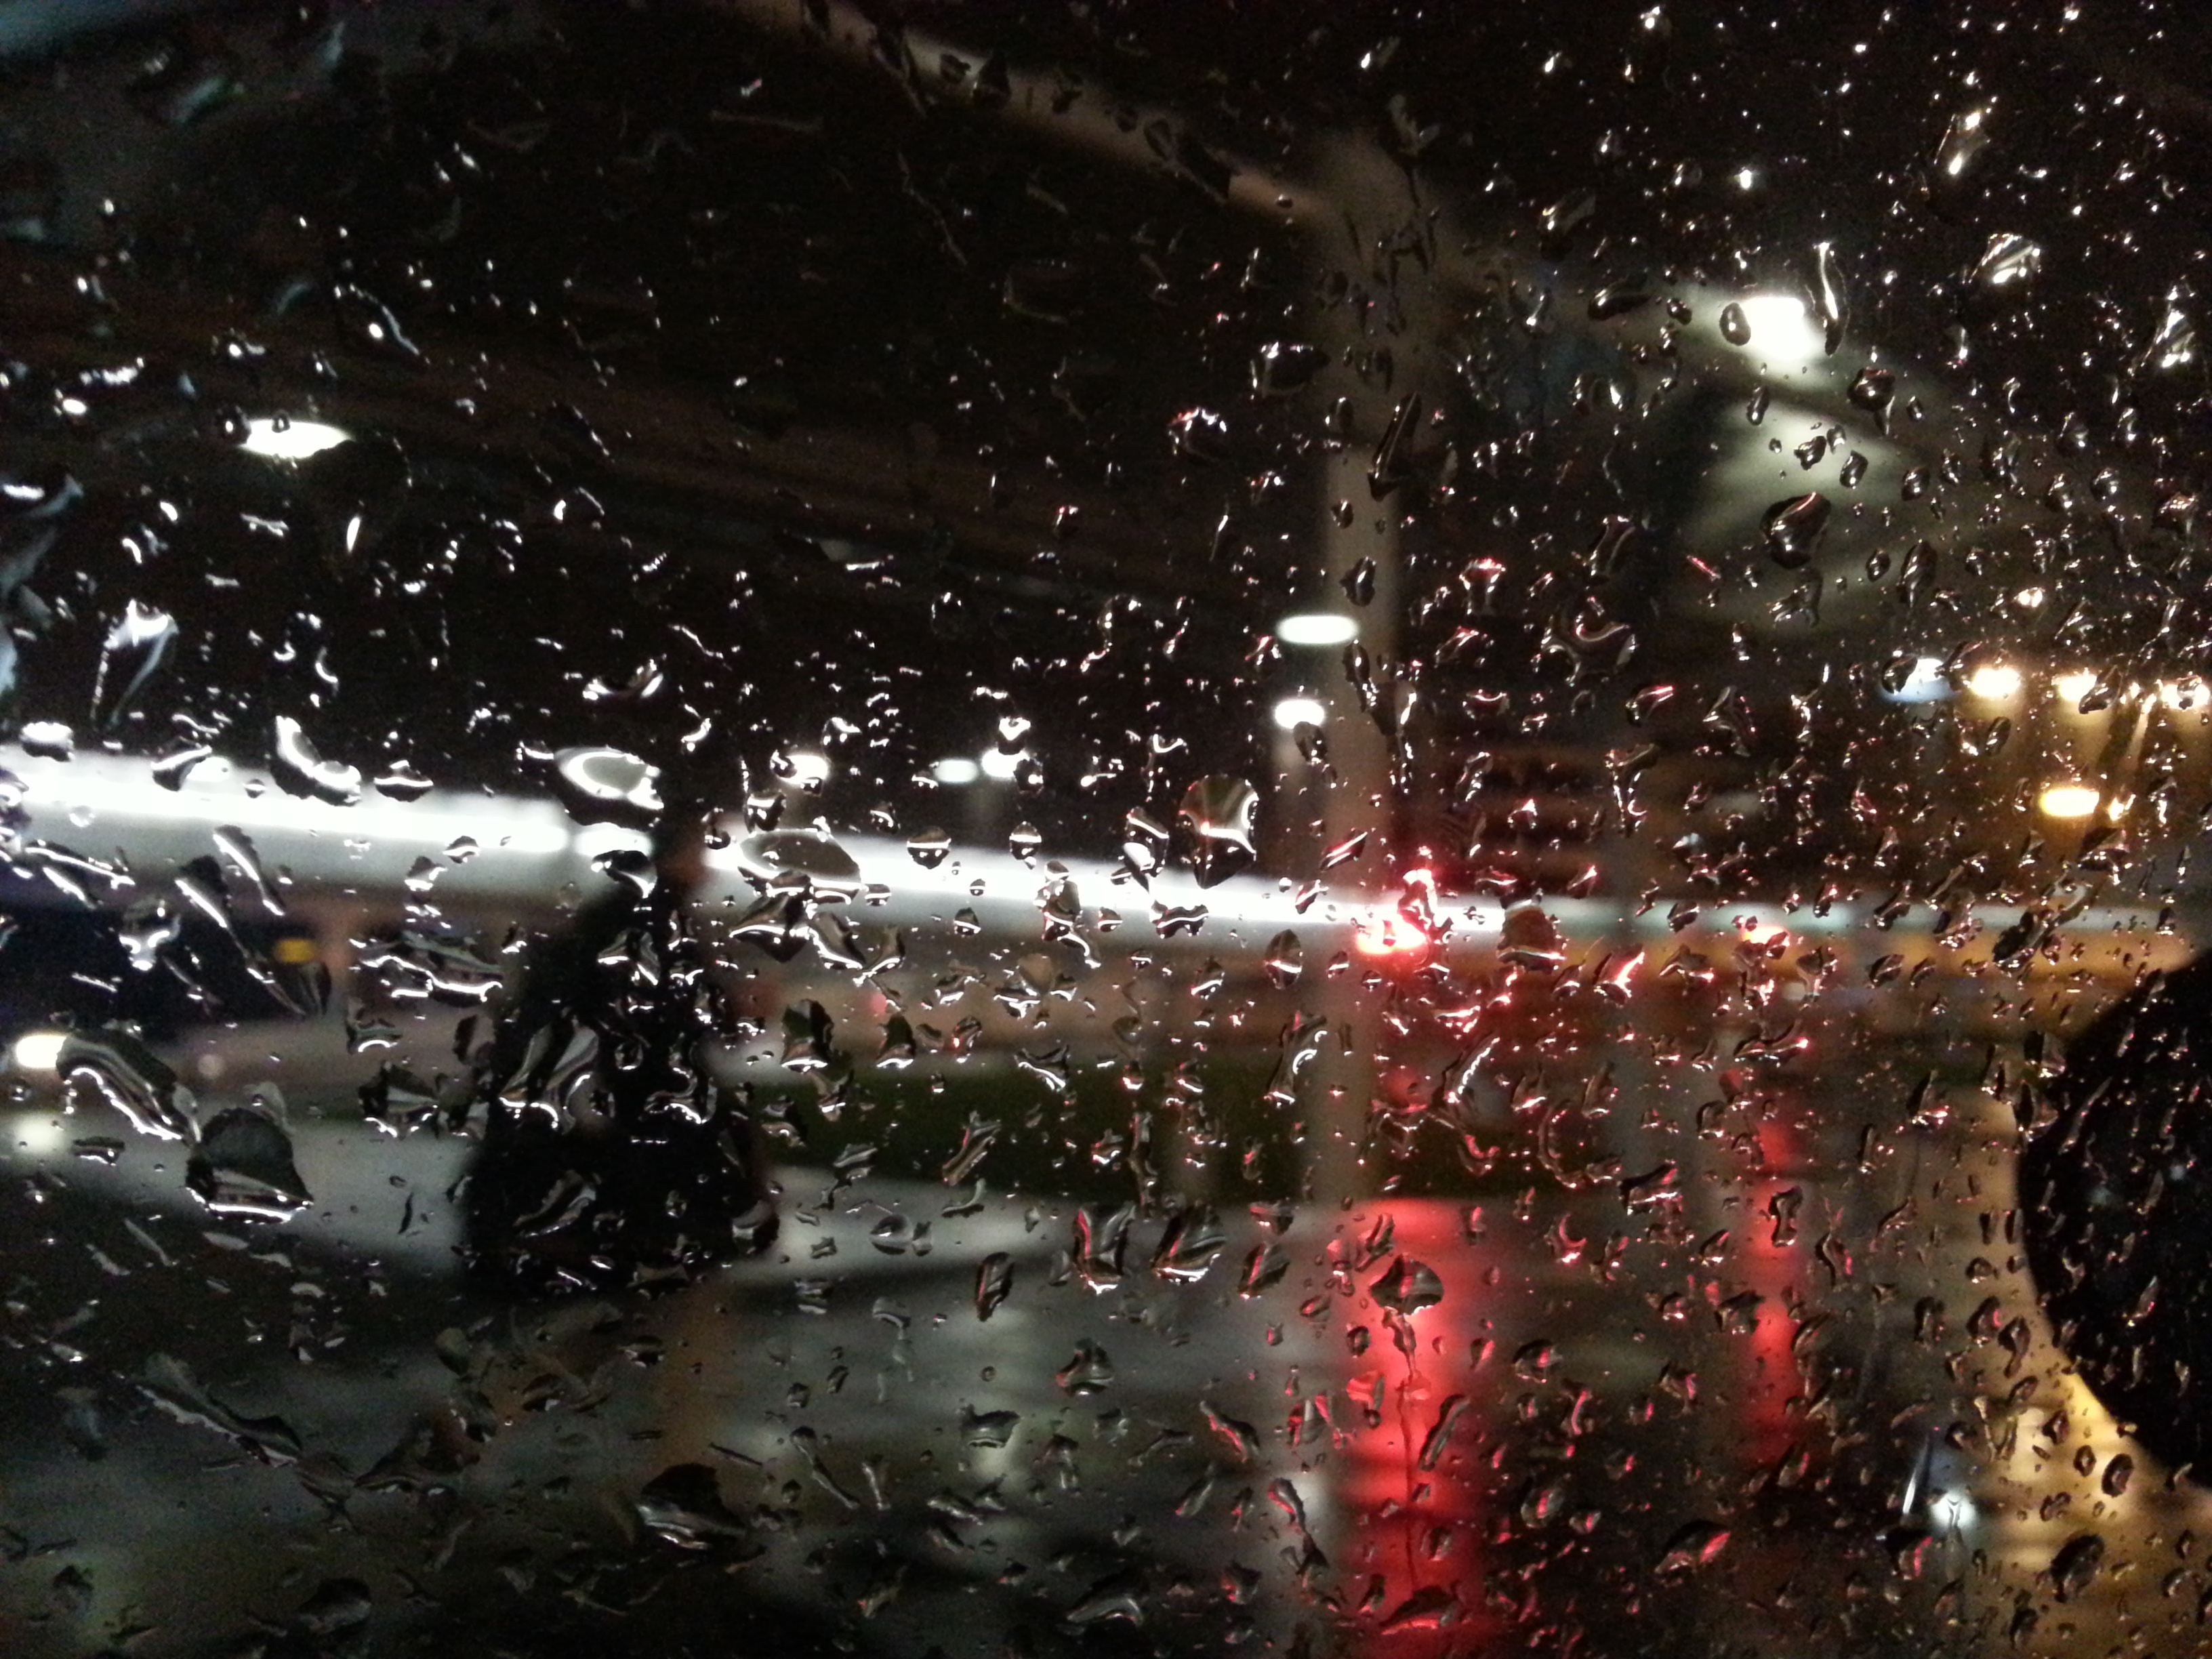 rain on window at night